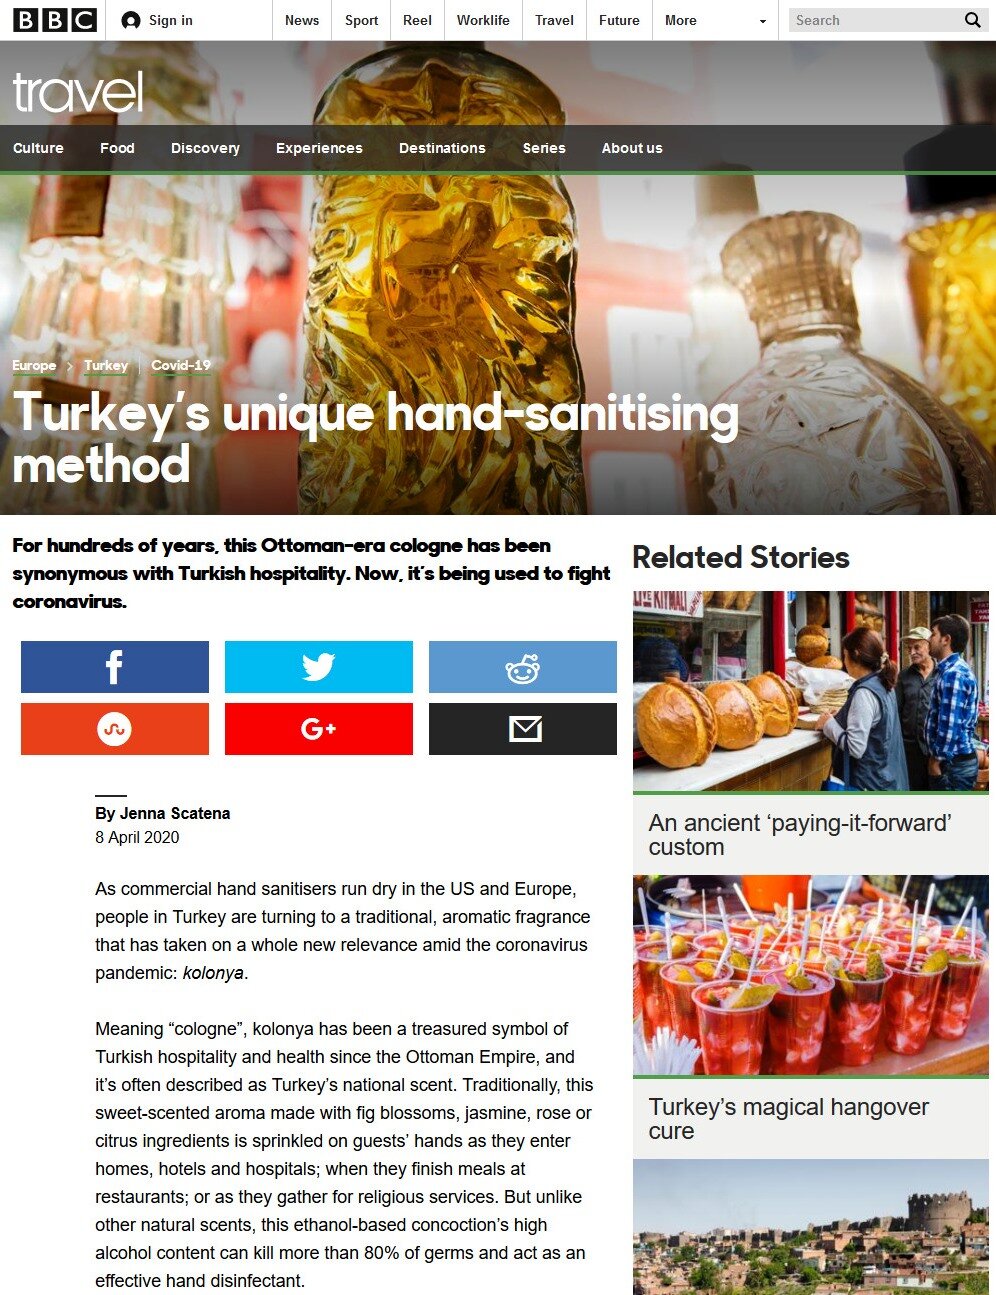 Turkey's unique hand sanitiser